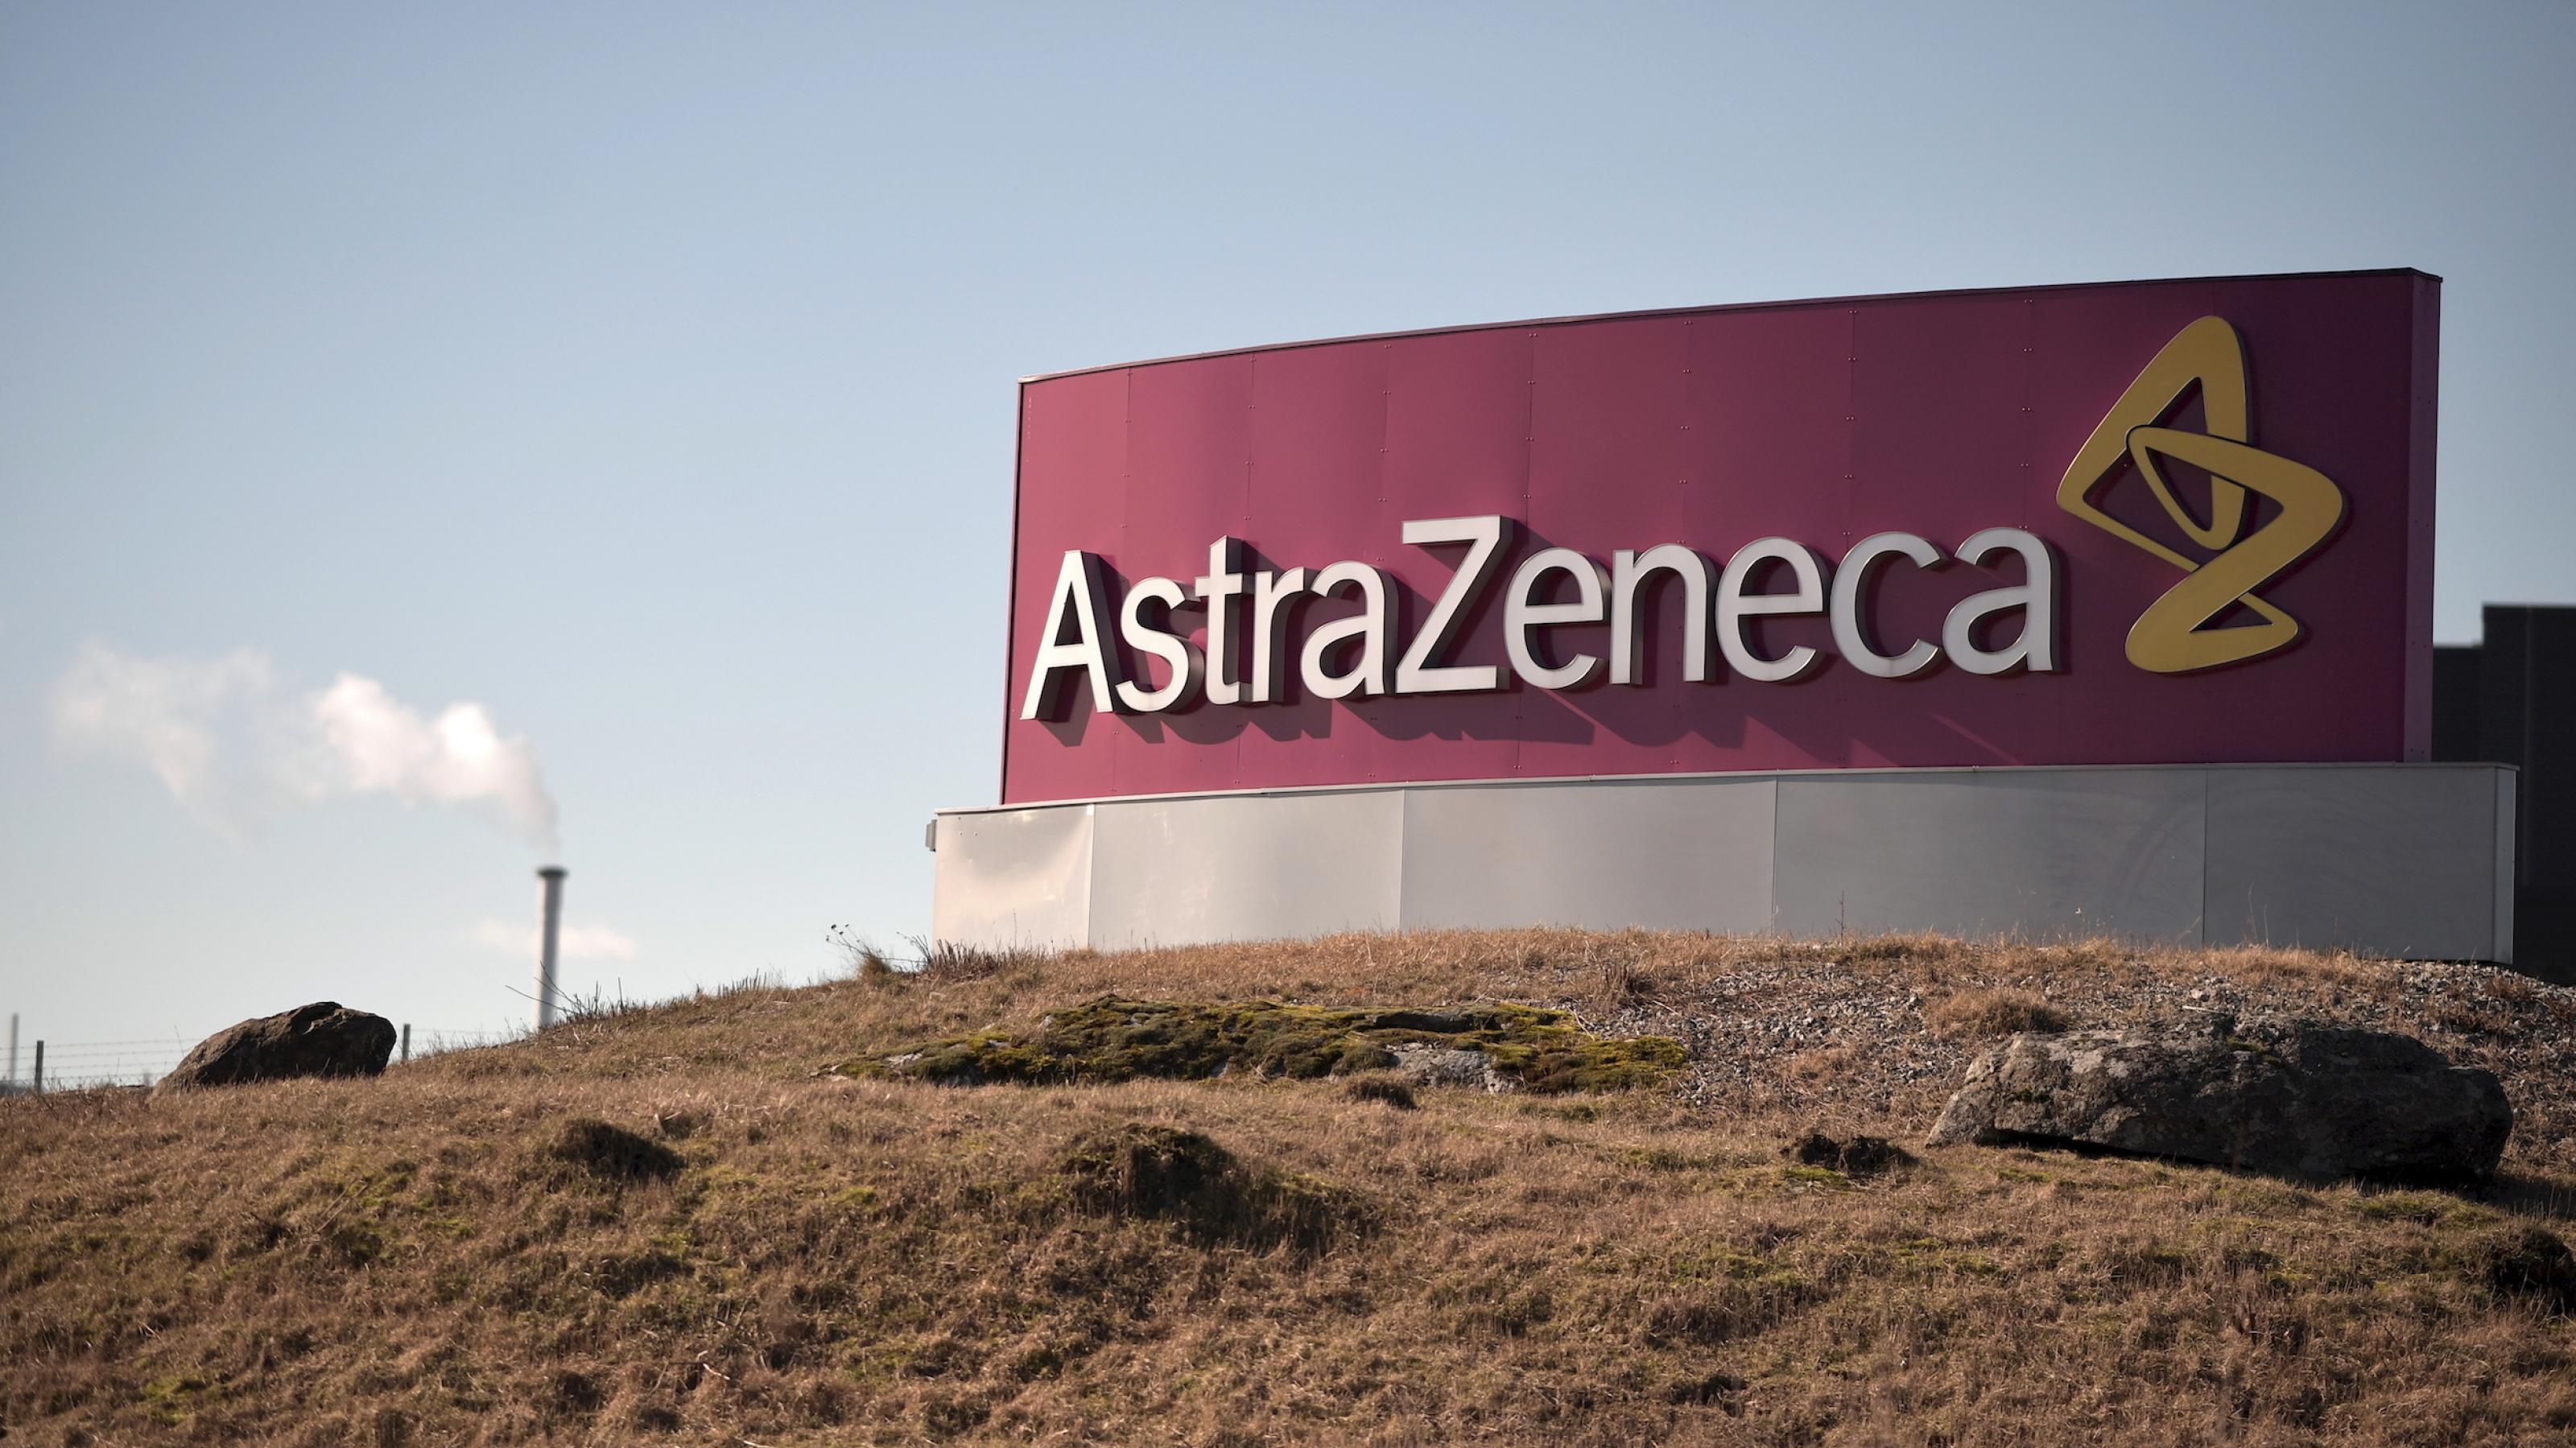 Das Logo von AstraZeneca vor einer Landschaft mit brauner Erde.